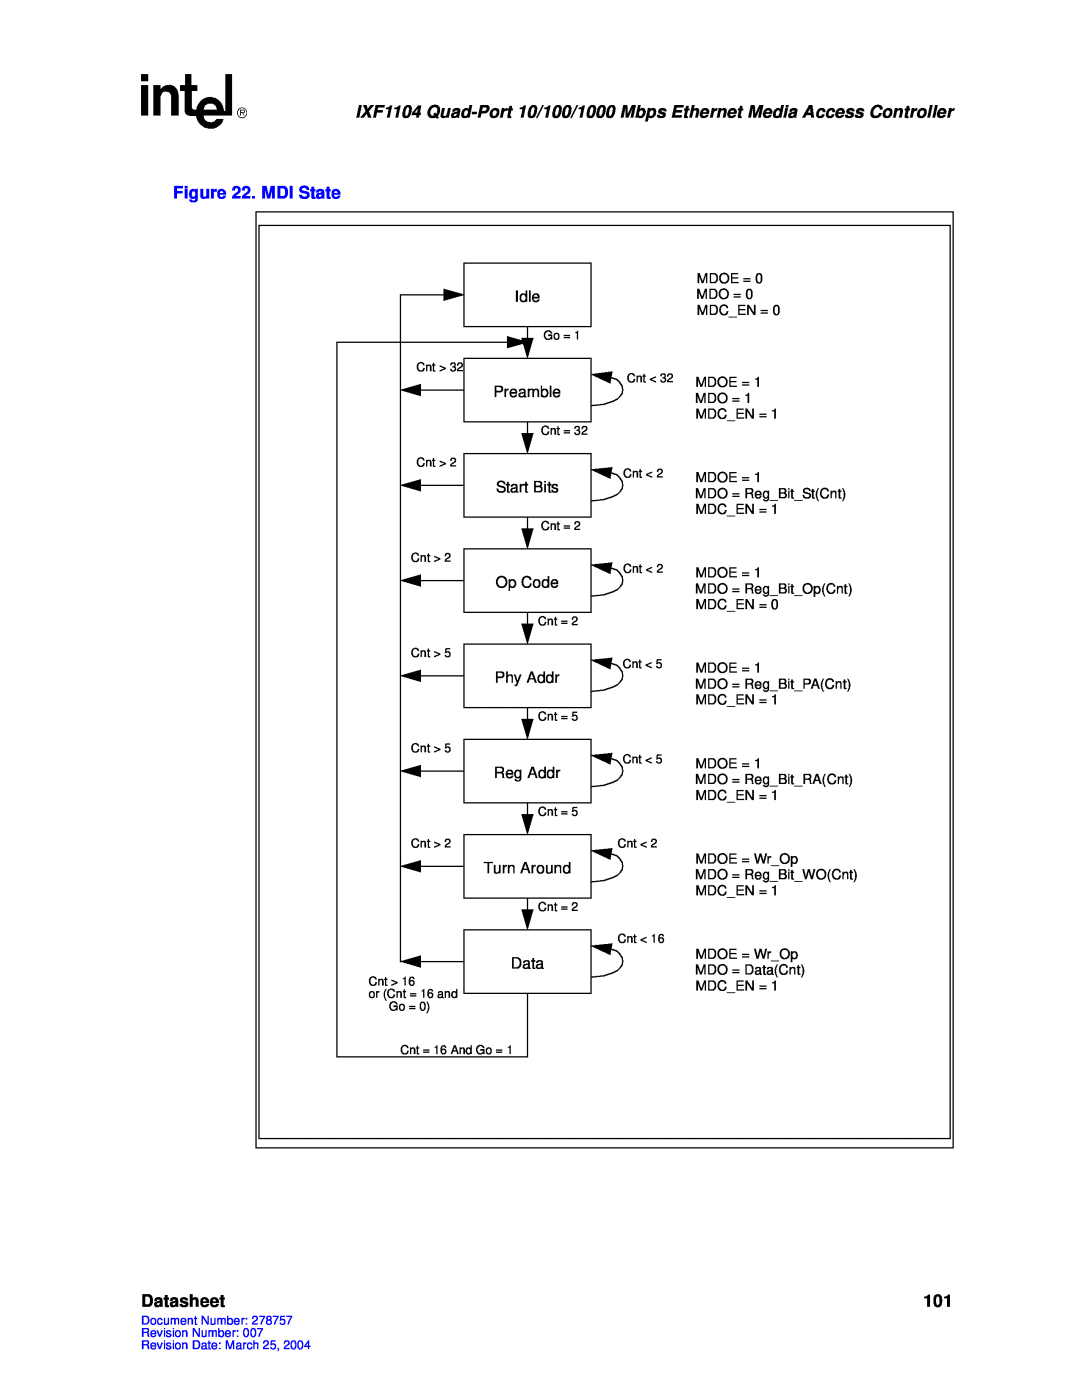 Intel IXF1104 manual MDI State, Datasheet 